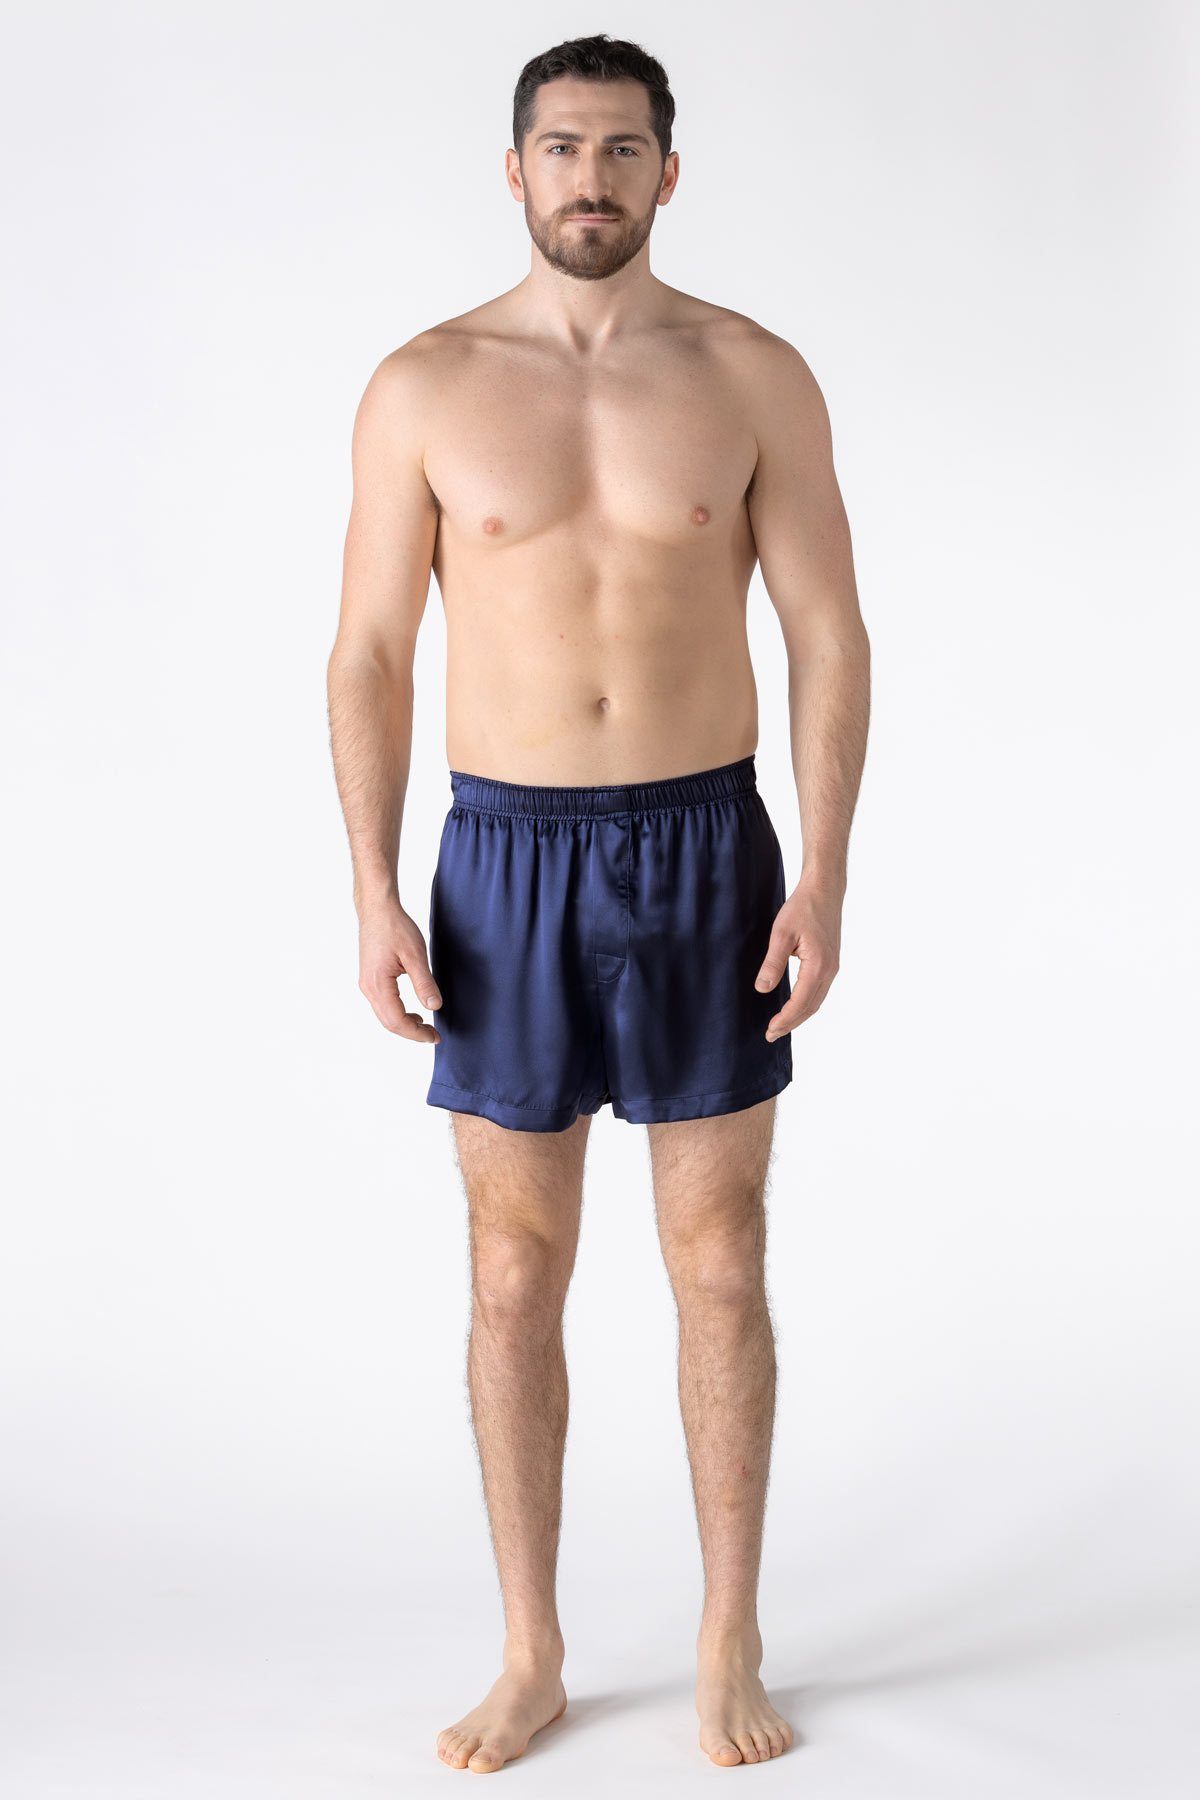 Men's Silk Boxer Shorts in Pink – CHUOCHU